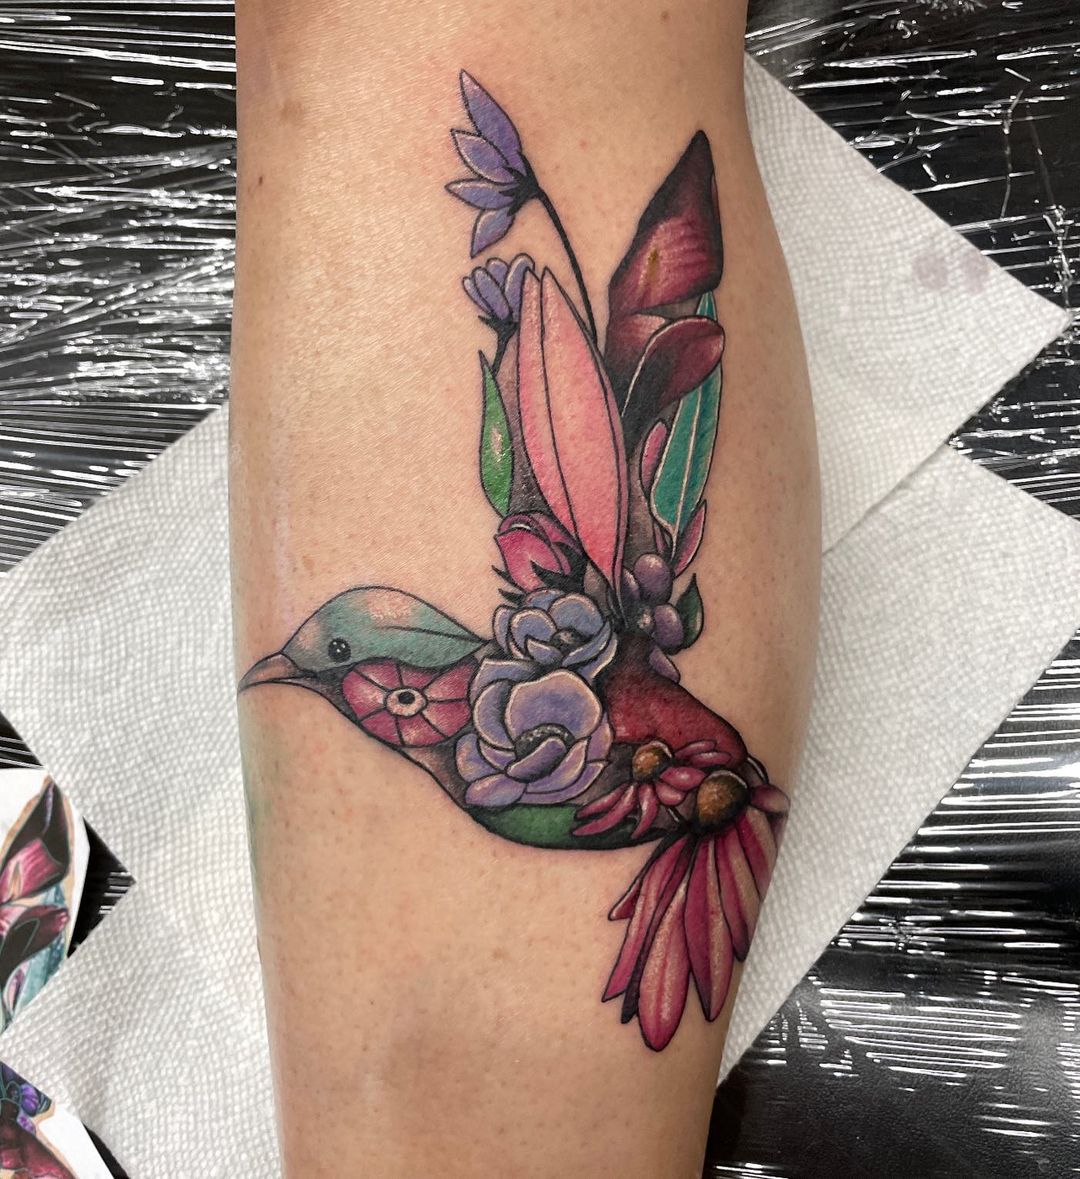 Tatuaje de colibrí creativo y único.